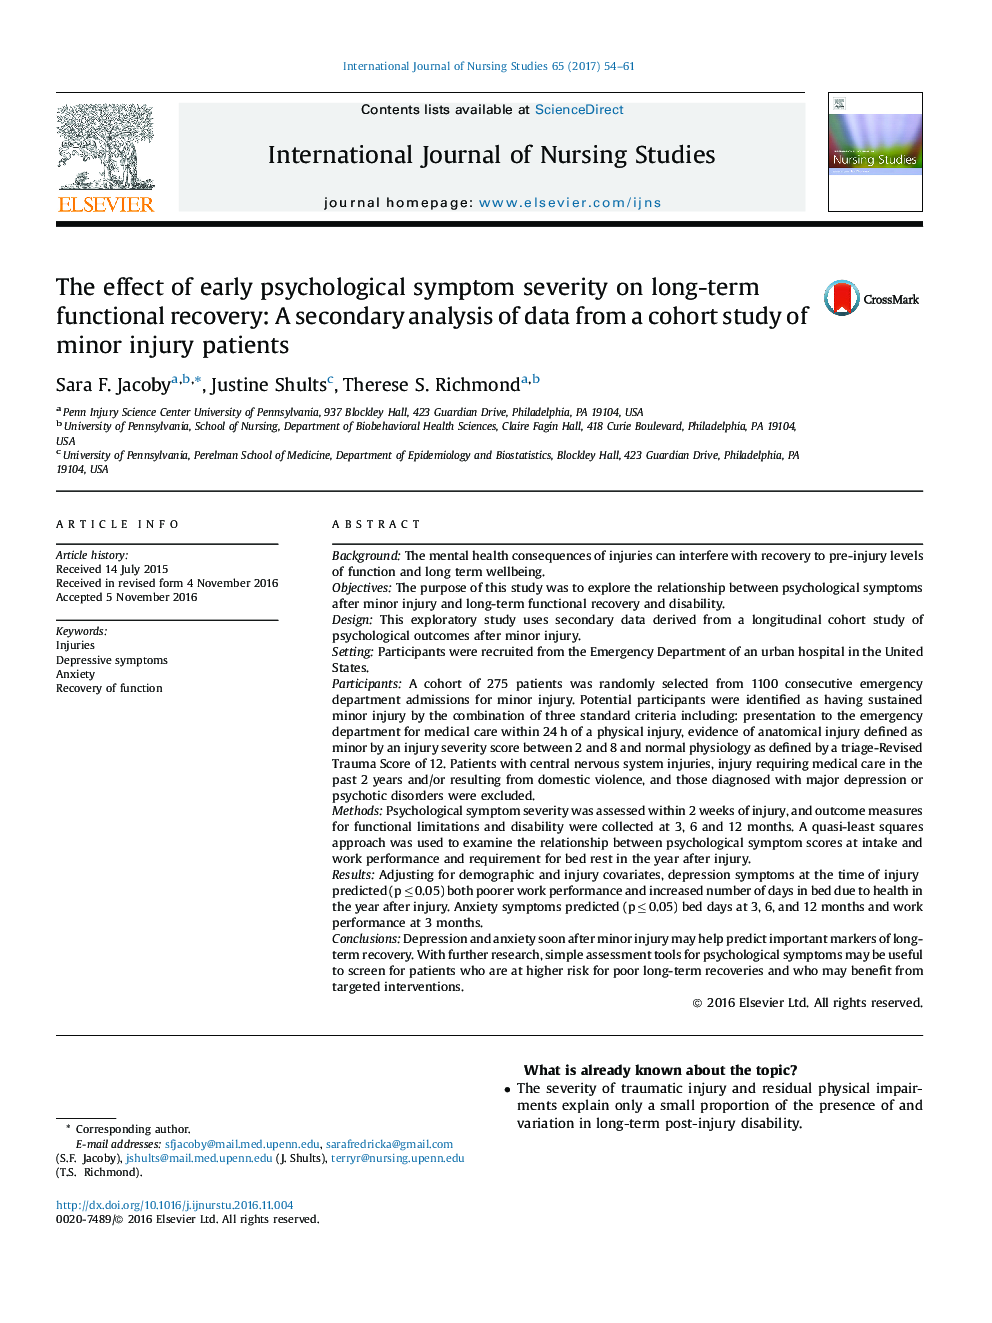 تأثیر شدت علائم اولیه روانشناختی بر بهبود عملکرد بلند مدت: یک تجزیه و تحلیل ثانویه از داده های یک مطالعه کوهورت از بیماران آسیبدی جزئی 